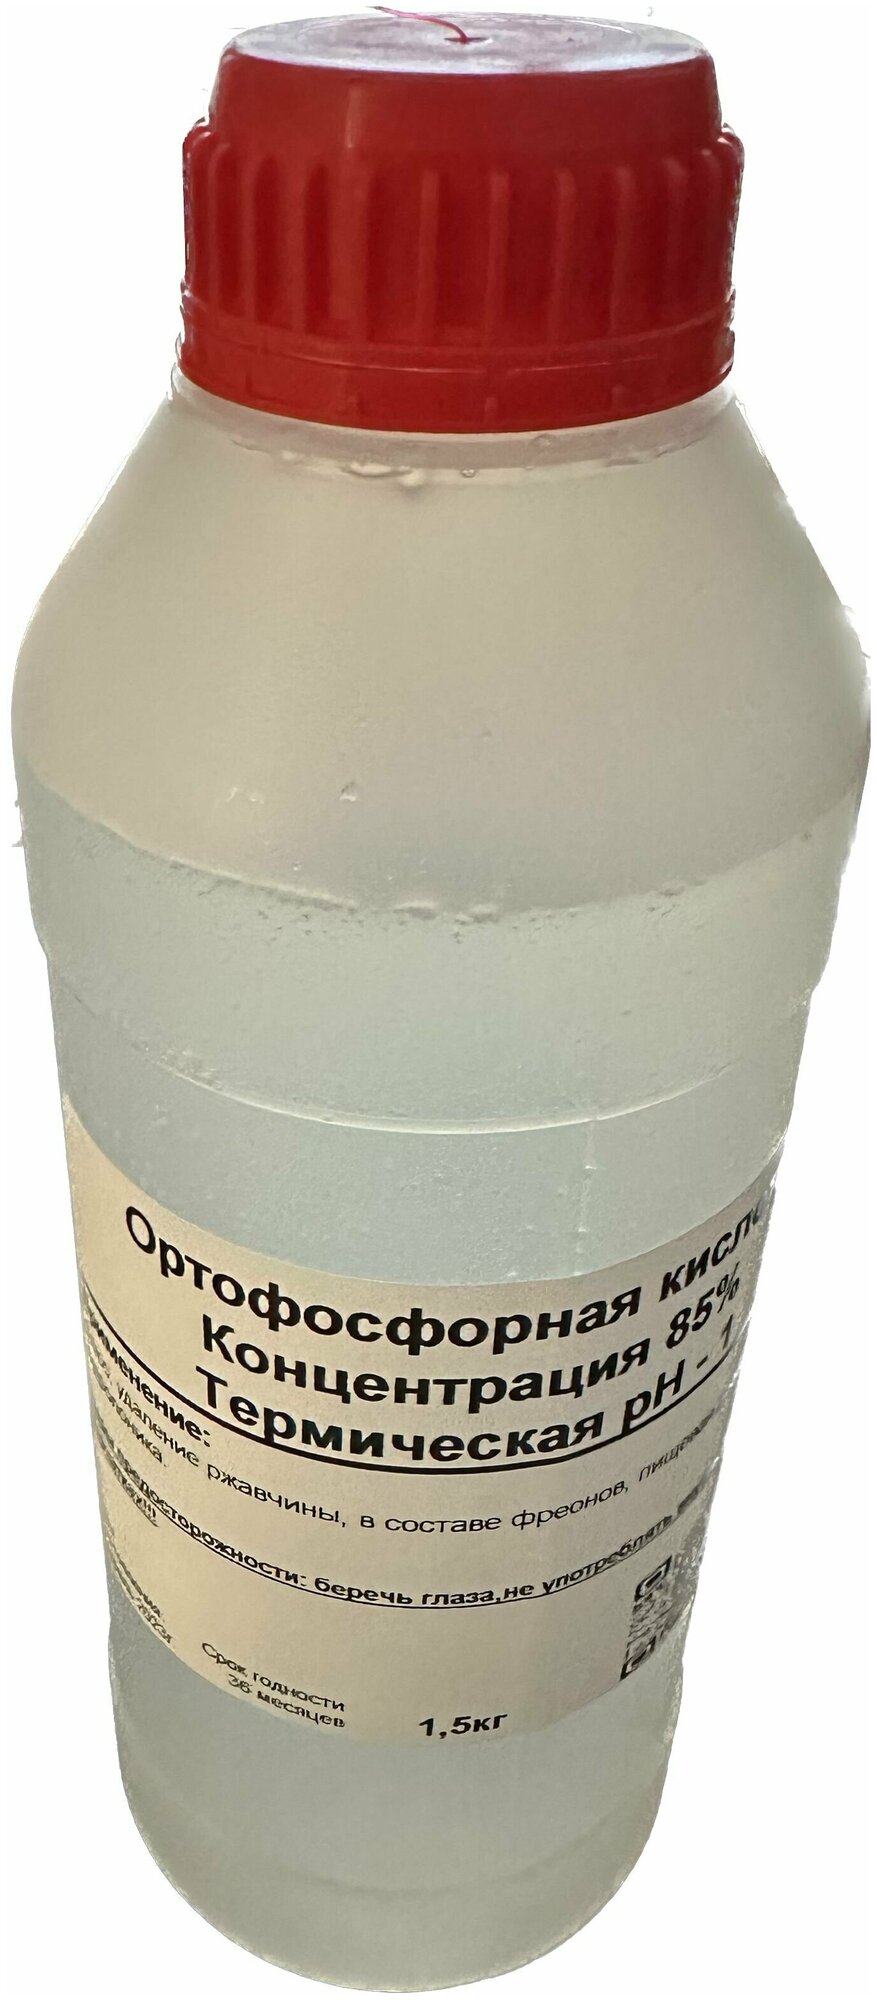 Ортофосфорная кислота 85% марка А 1,5килограмма